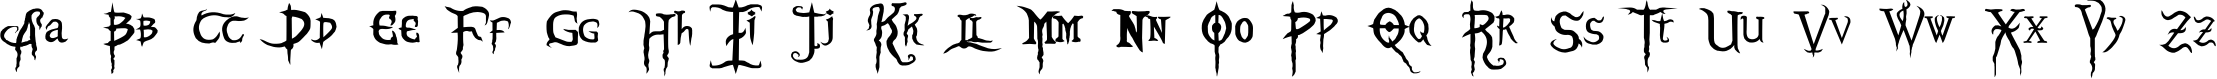 Пример написания английского алфавита шрифтом Blood Omen